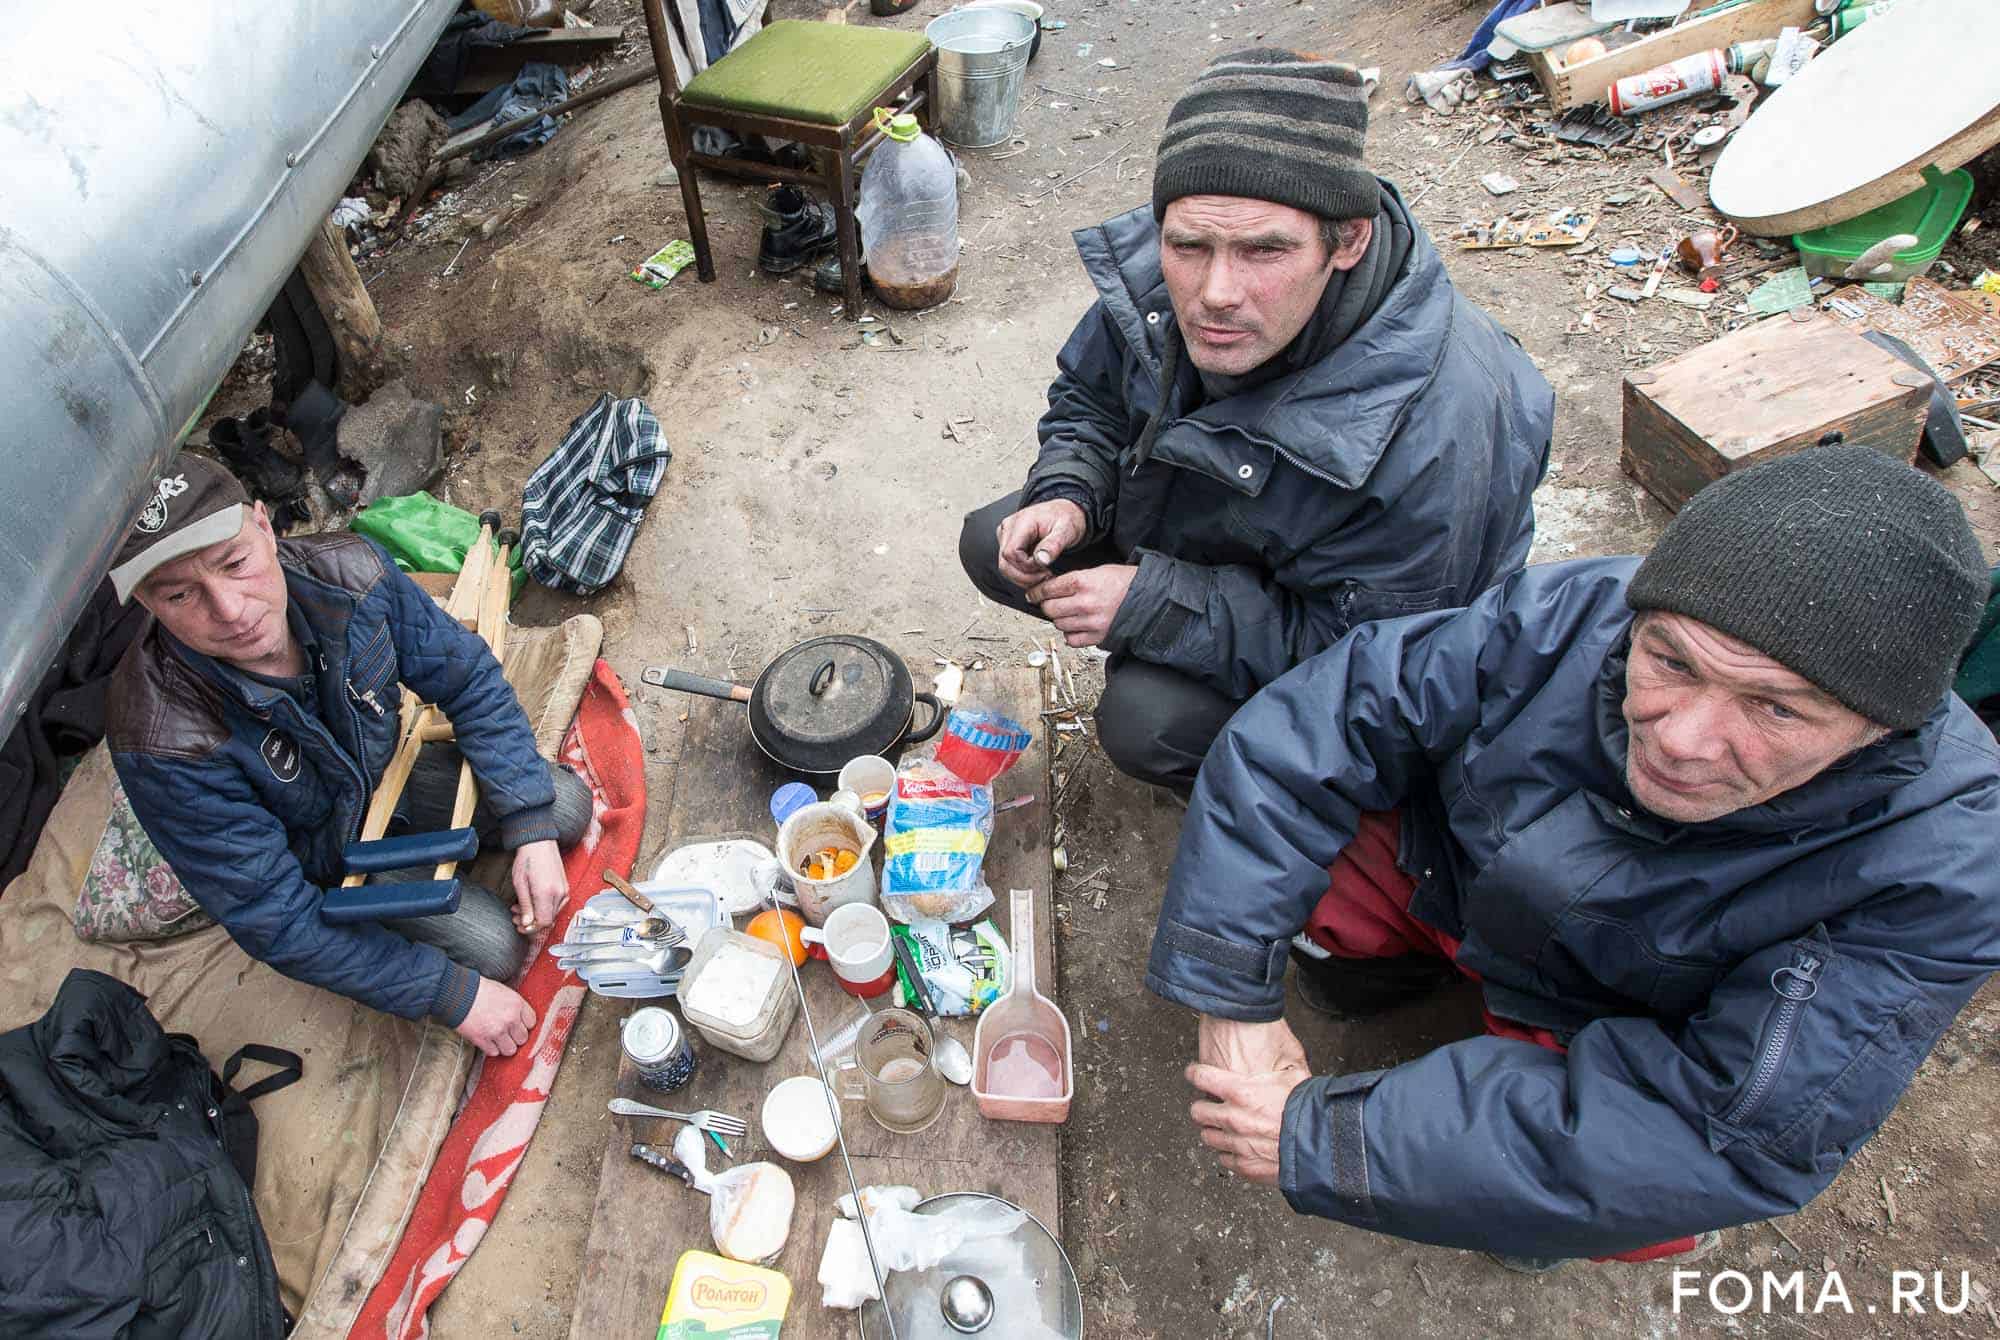 Все сидят по домам. Но что происходит с бездомными? — фото с улиц пустой Москвы